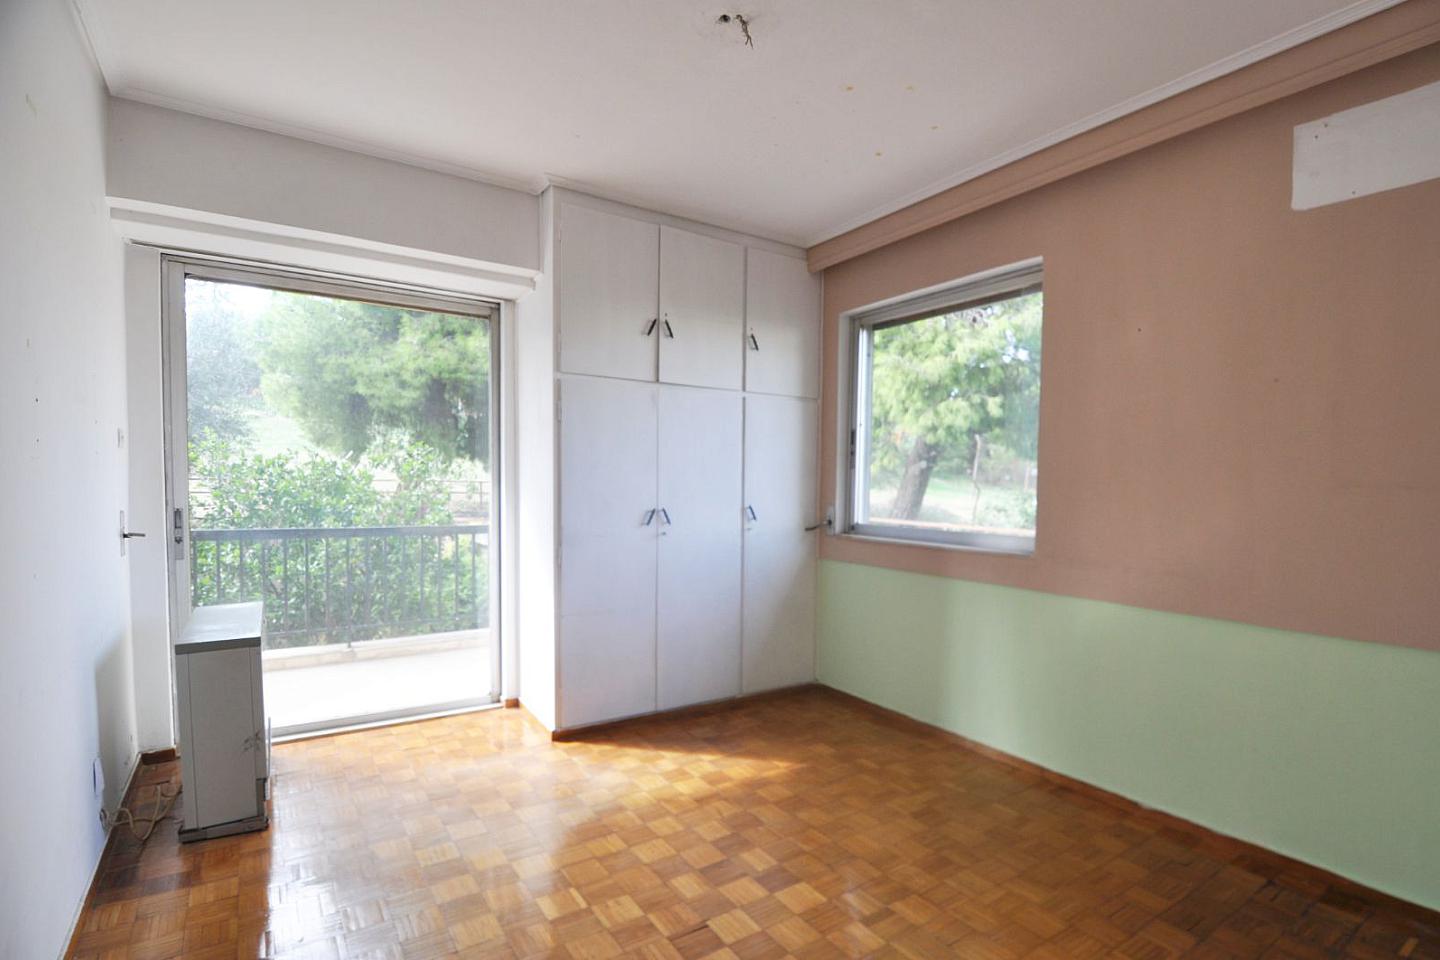 VOULIAGMENI - KAVOURI, 公寓, 出售, 52 平方米